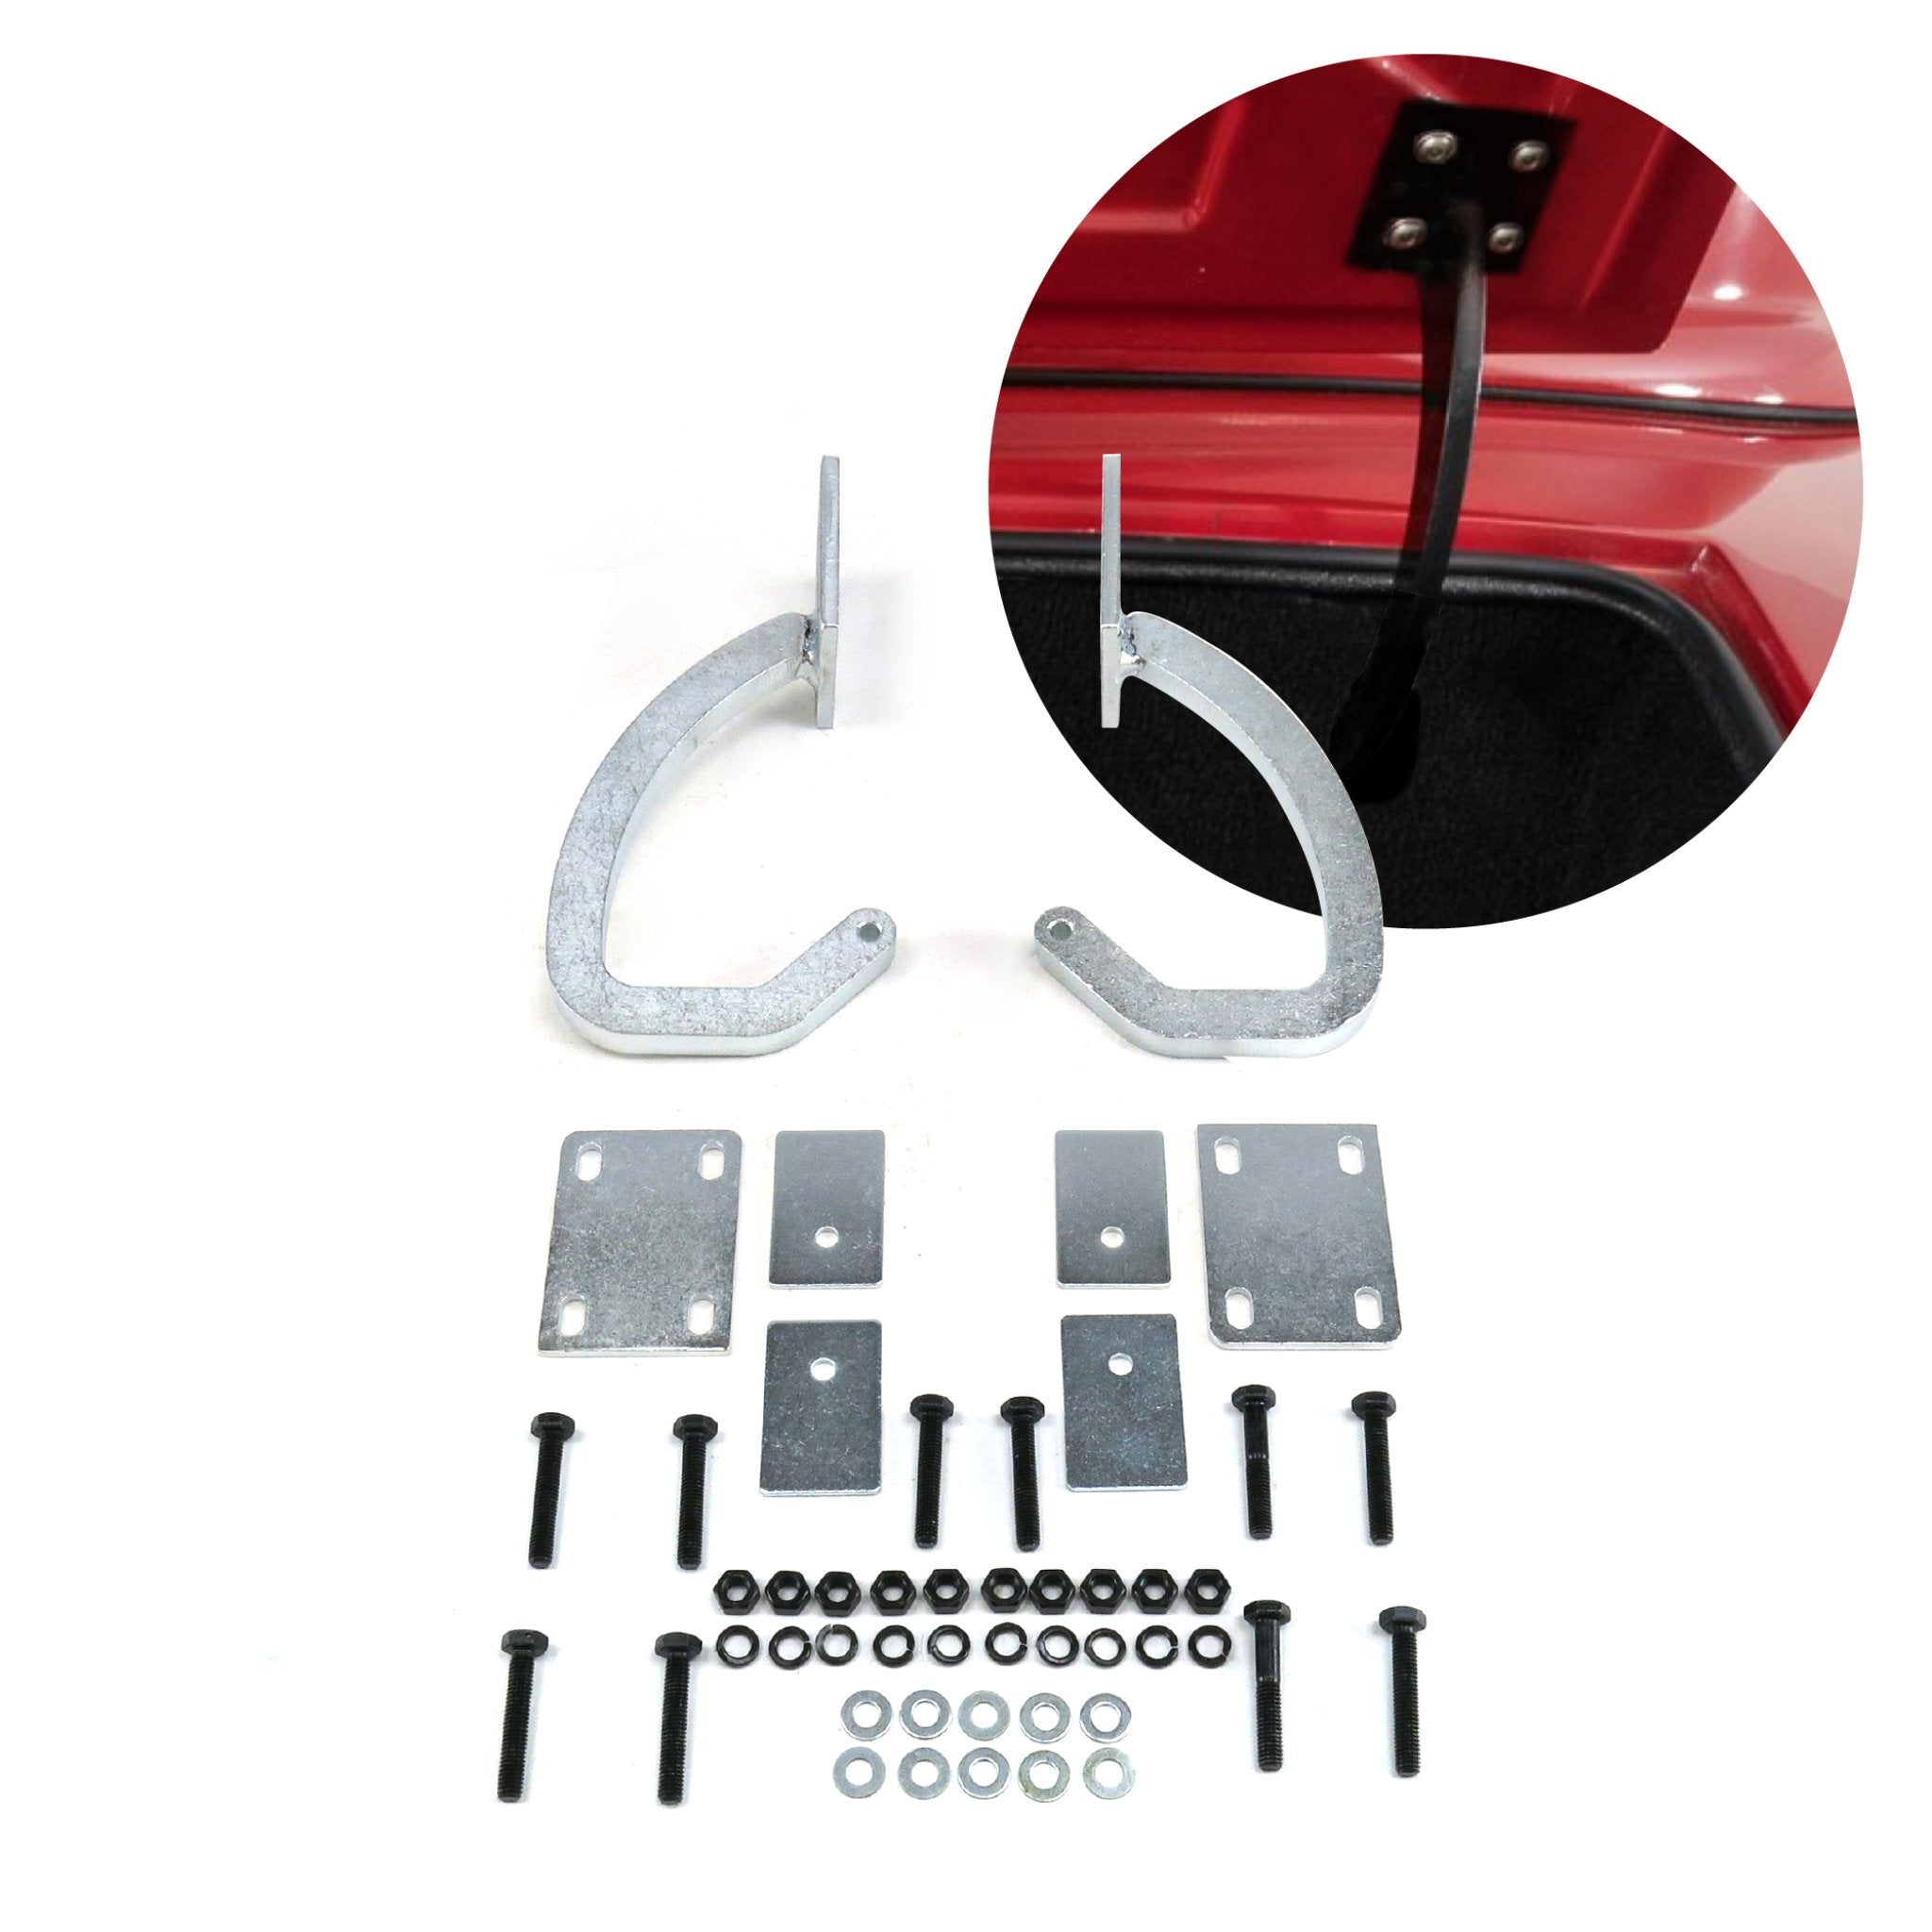 Universal Trunk Lid Hinge Kit Upgrade Replacement Repair for Custom Car Hot Rod